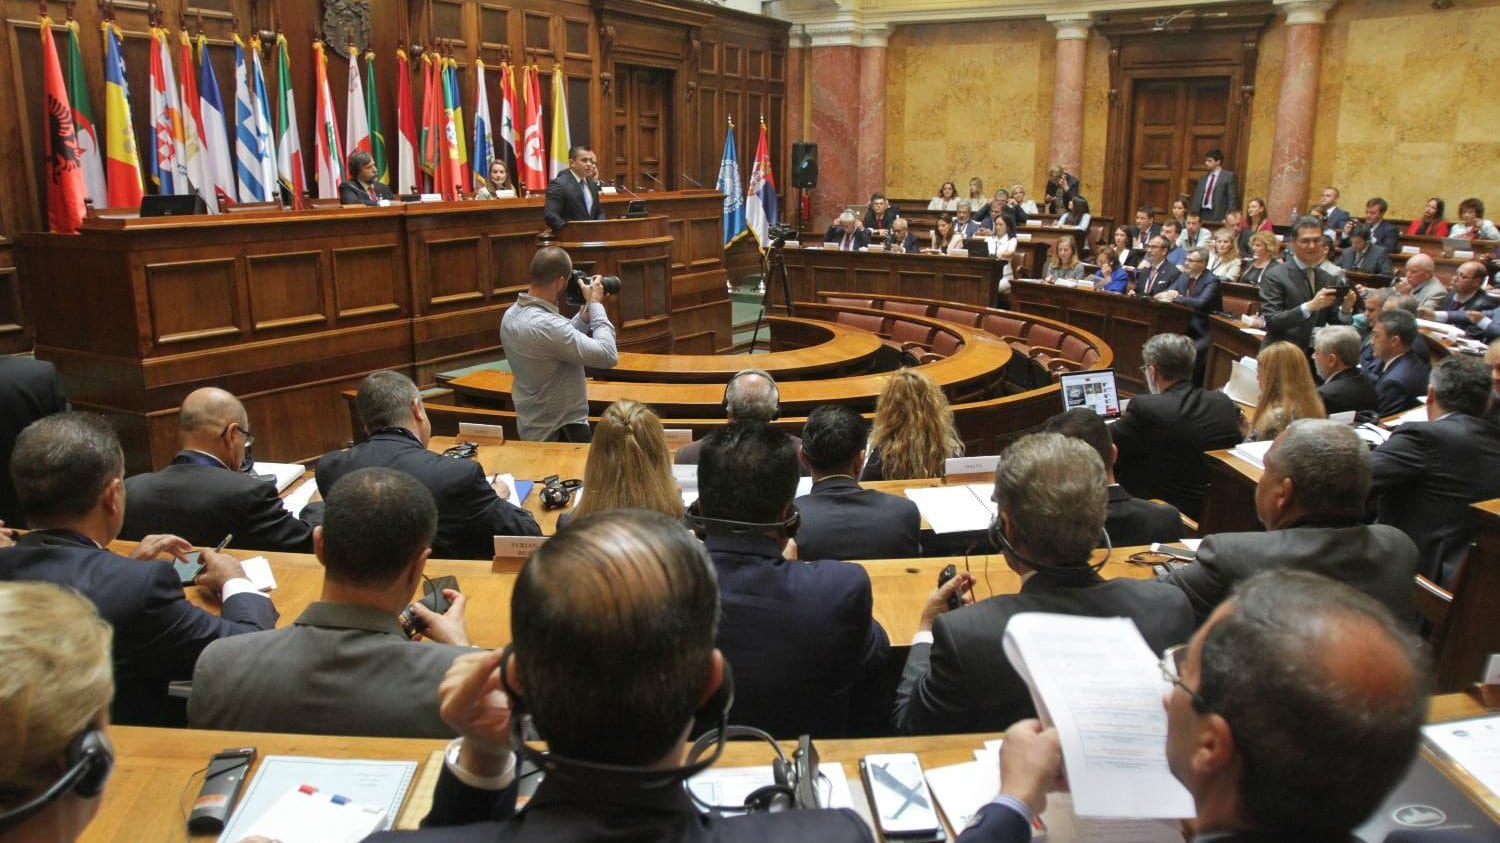 Skupština Srbije završila načelnu raspravu bez prisustva opozicije 1